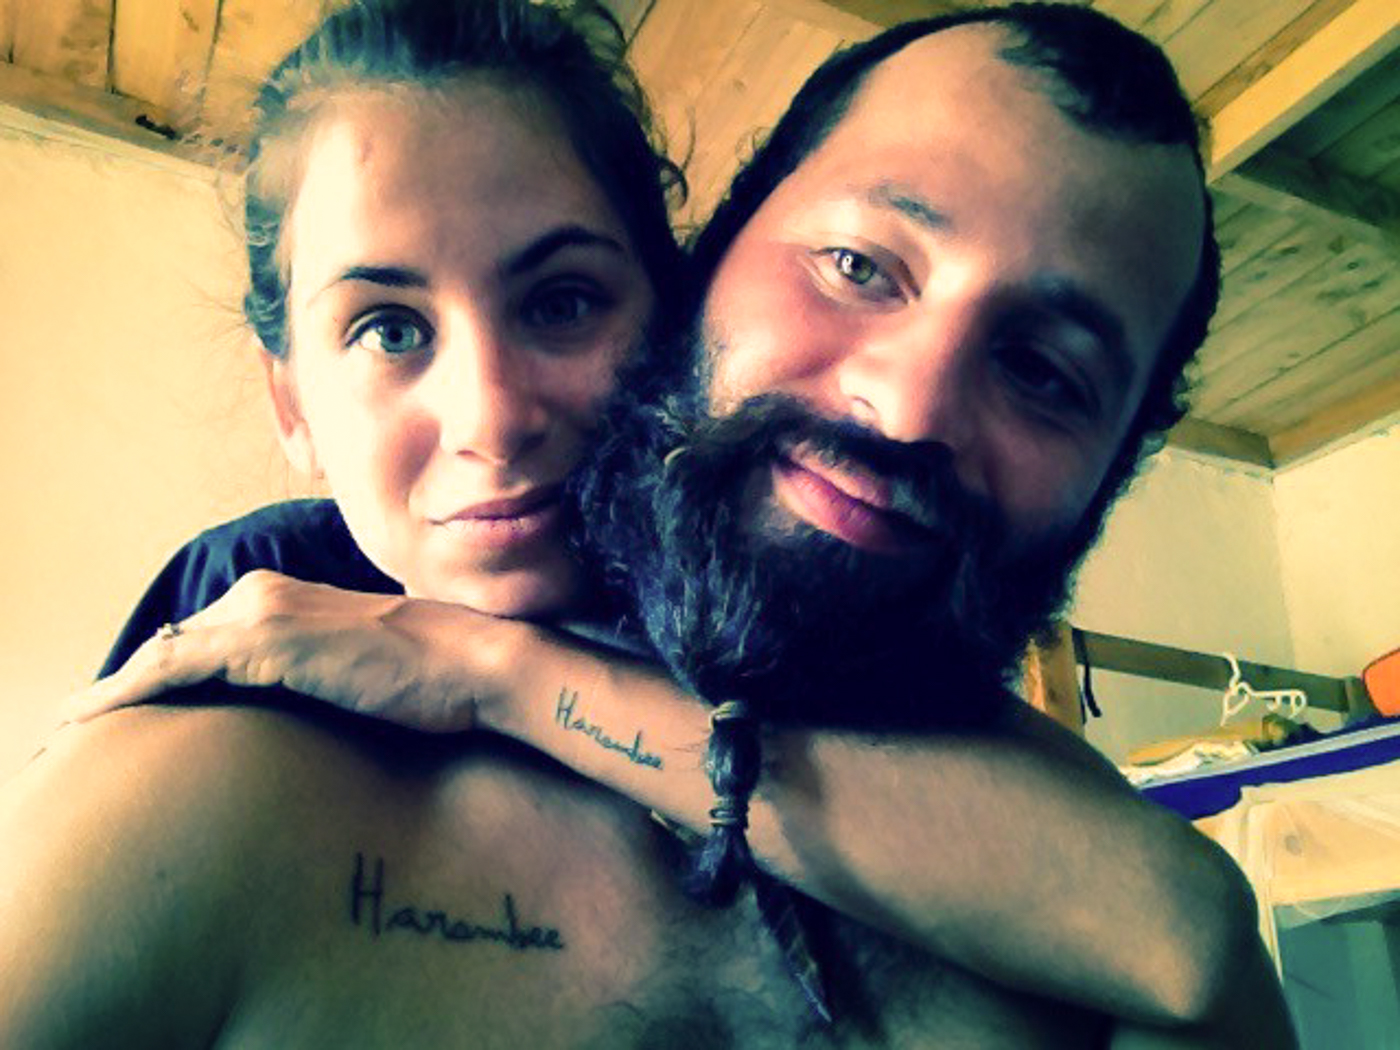 Tiago e Fernanda com a tatuagem do Harambee